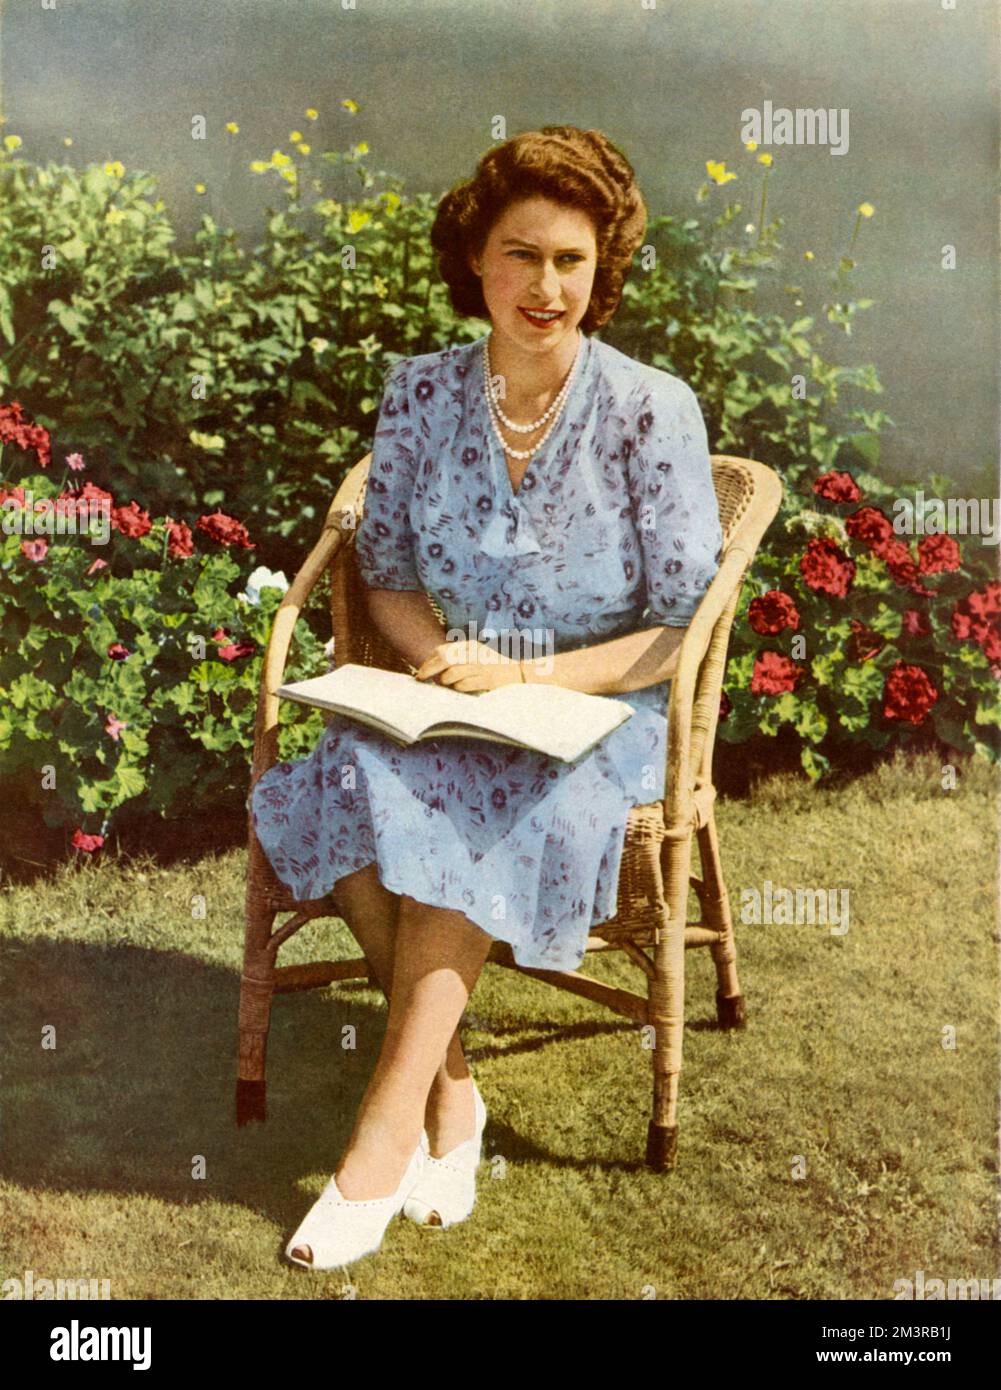 Die Erbin Presumptive, eine glückliche junge Frau und Mutter, H. R. H. Prinzessin Elizabeth, mit der sich das gesamte britische Commonwealth of Nations freut Datum: 1948 Stockfoto